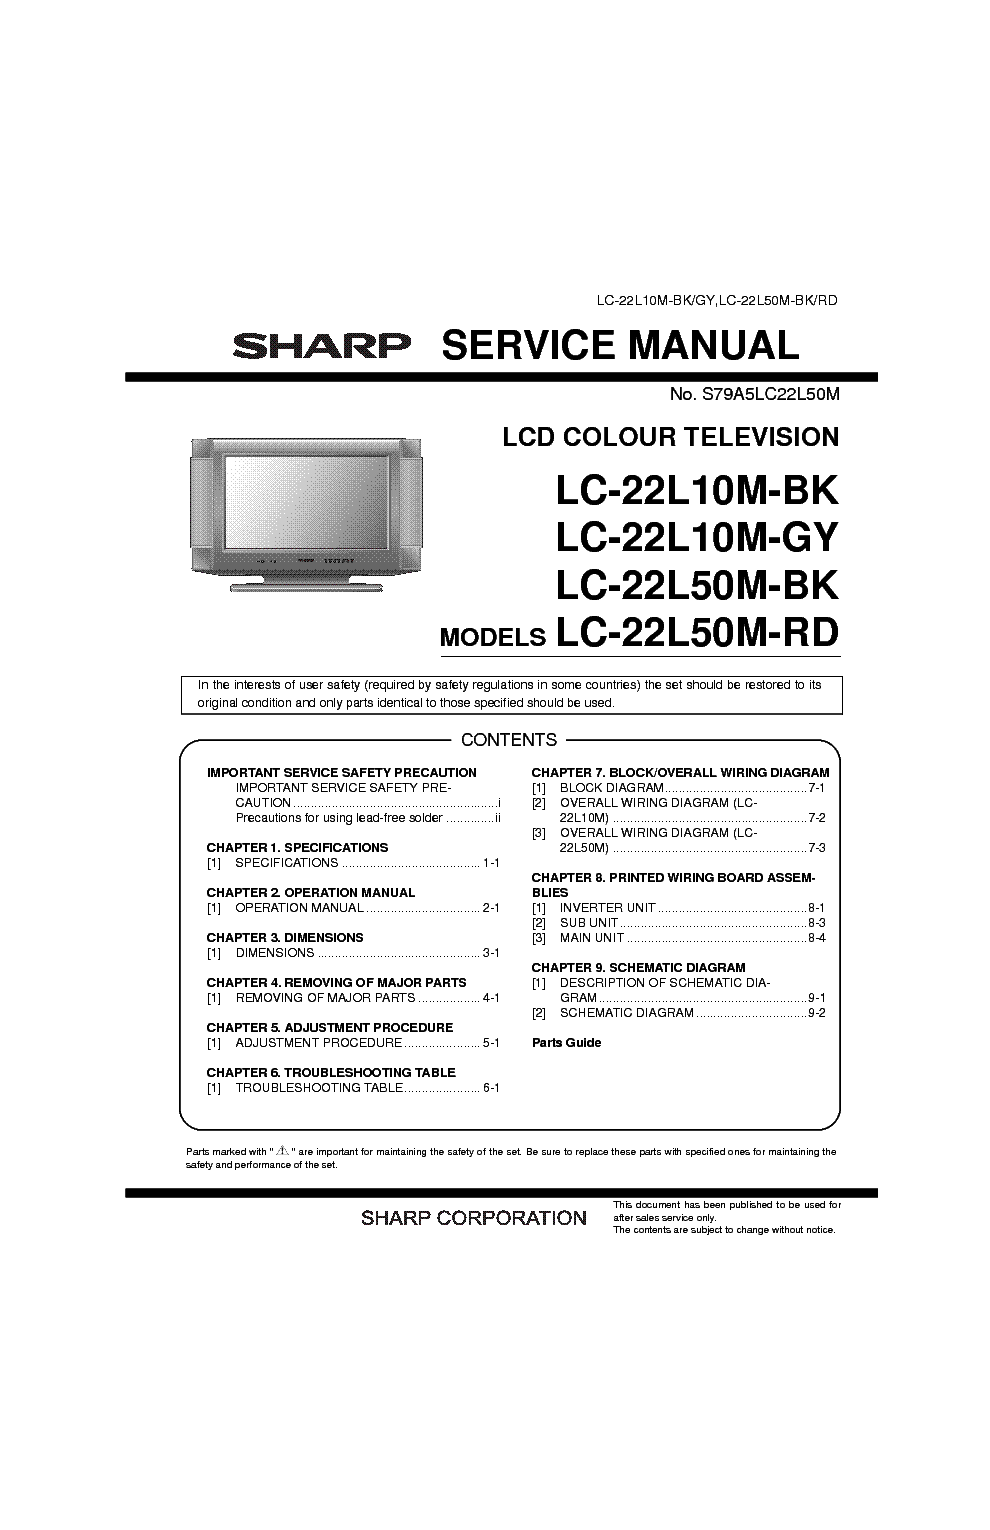 Sharp lc 32d44ru bk инструкция